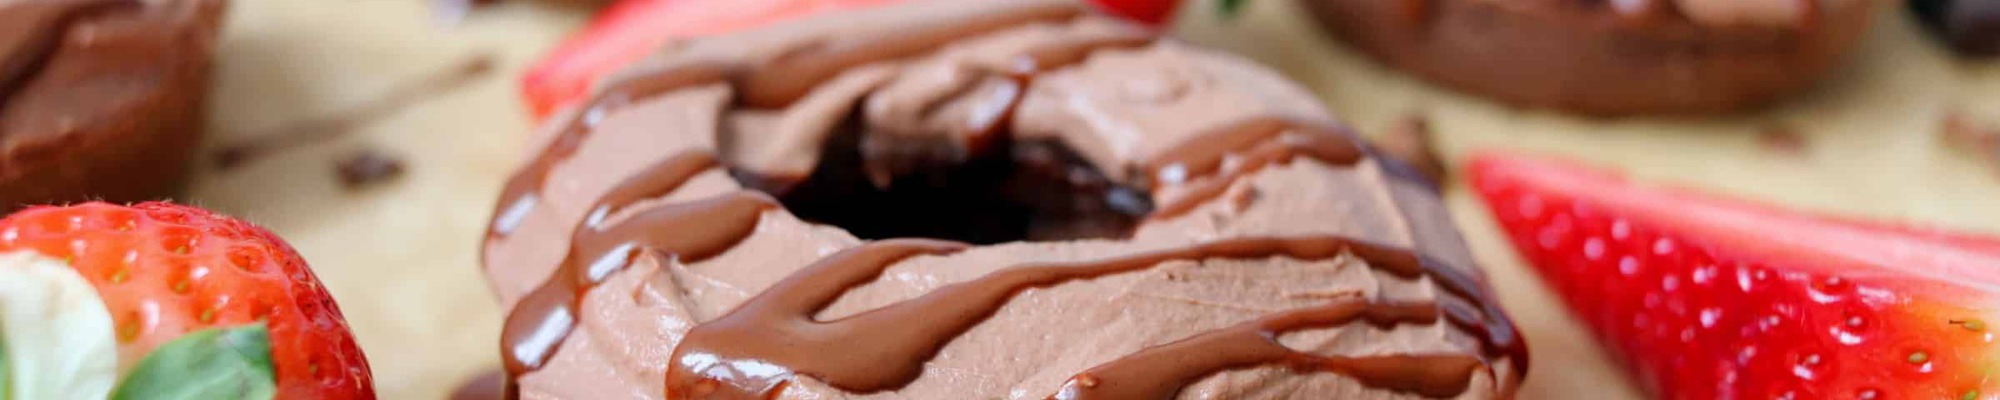 Sladučké čokoládové donuty nemusia mať stovky kalórií. Skús naše domáce, chutné a navyše bielkovinové (Recept)